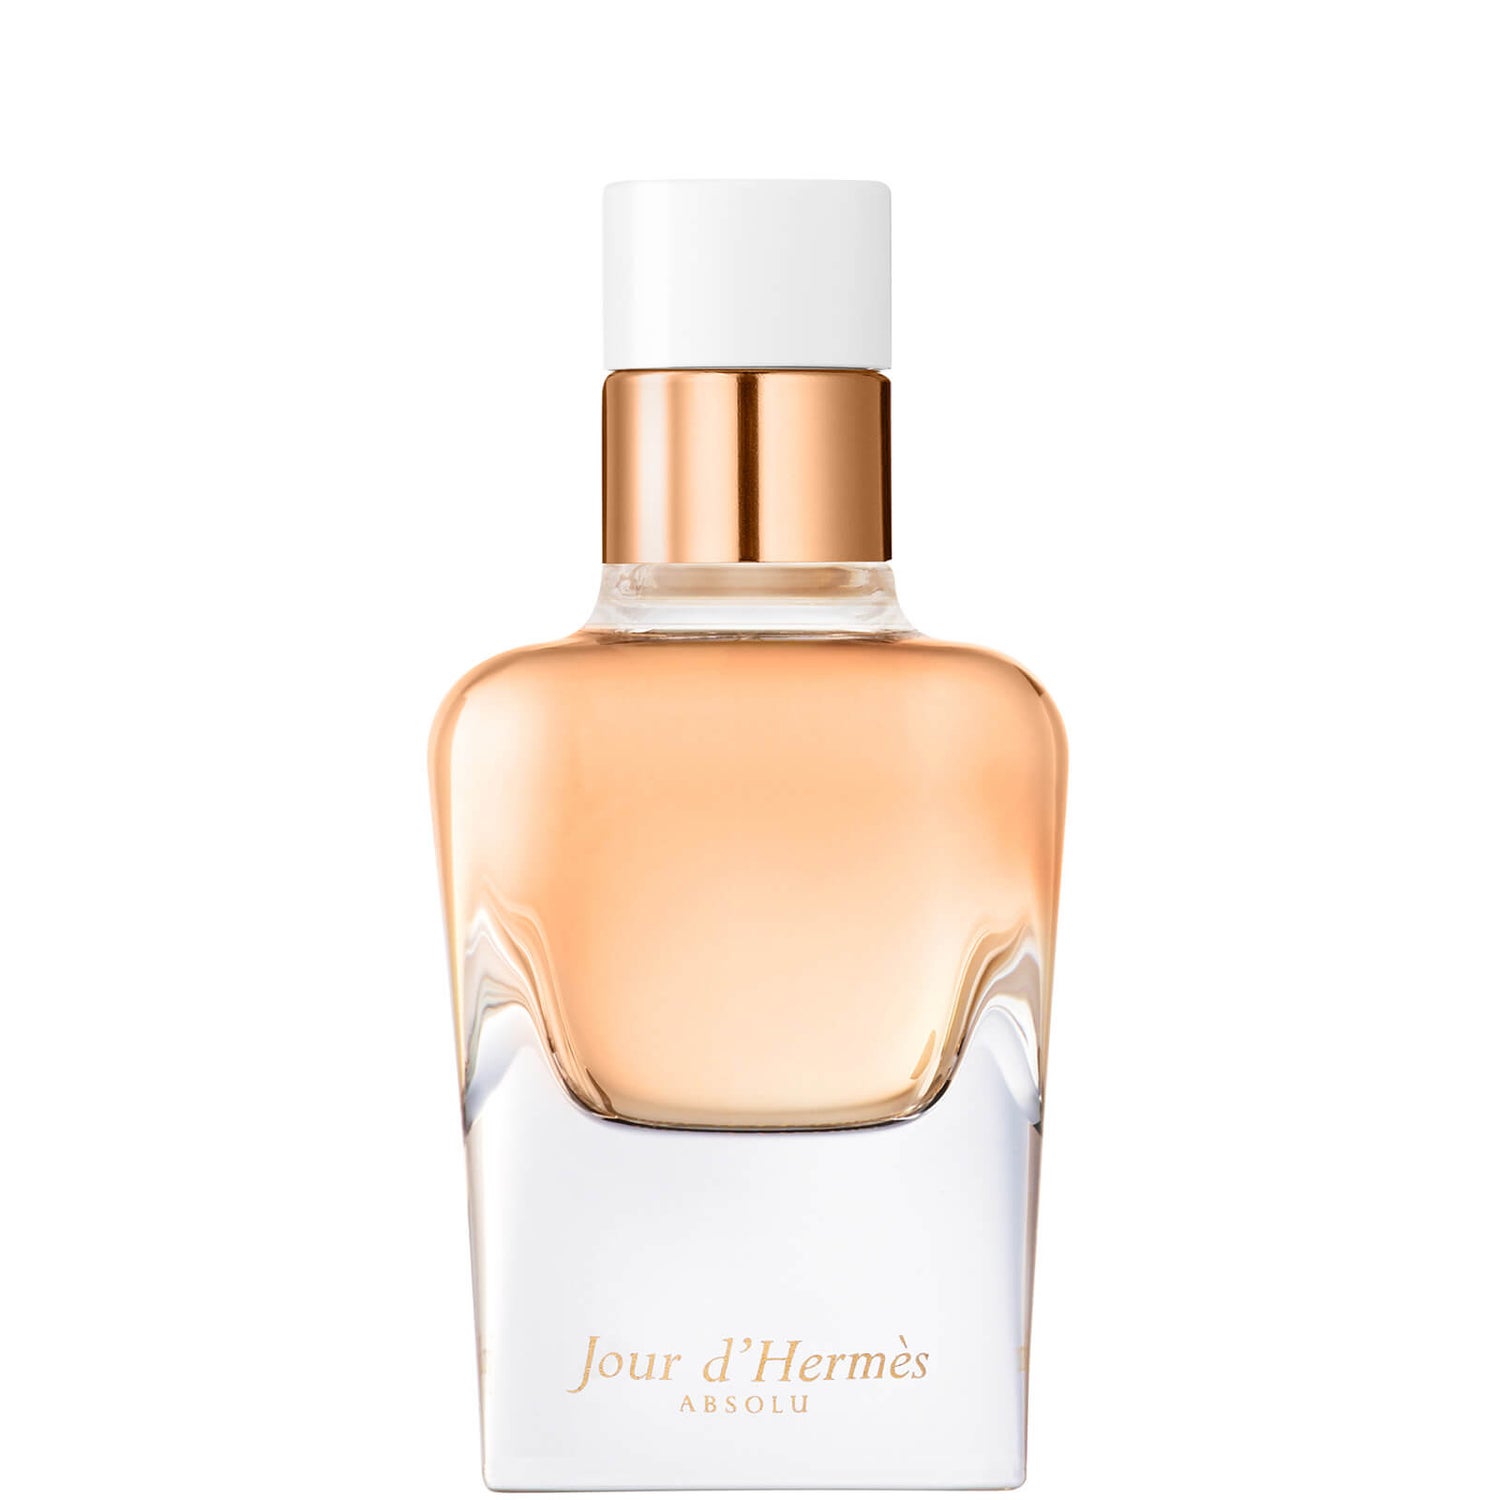 Hermès Jour d'Hermès Absolu Eau de Parfum Refillable Natural Spray 50ml